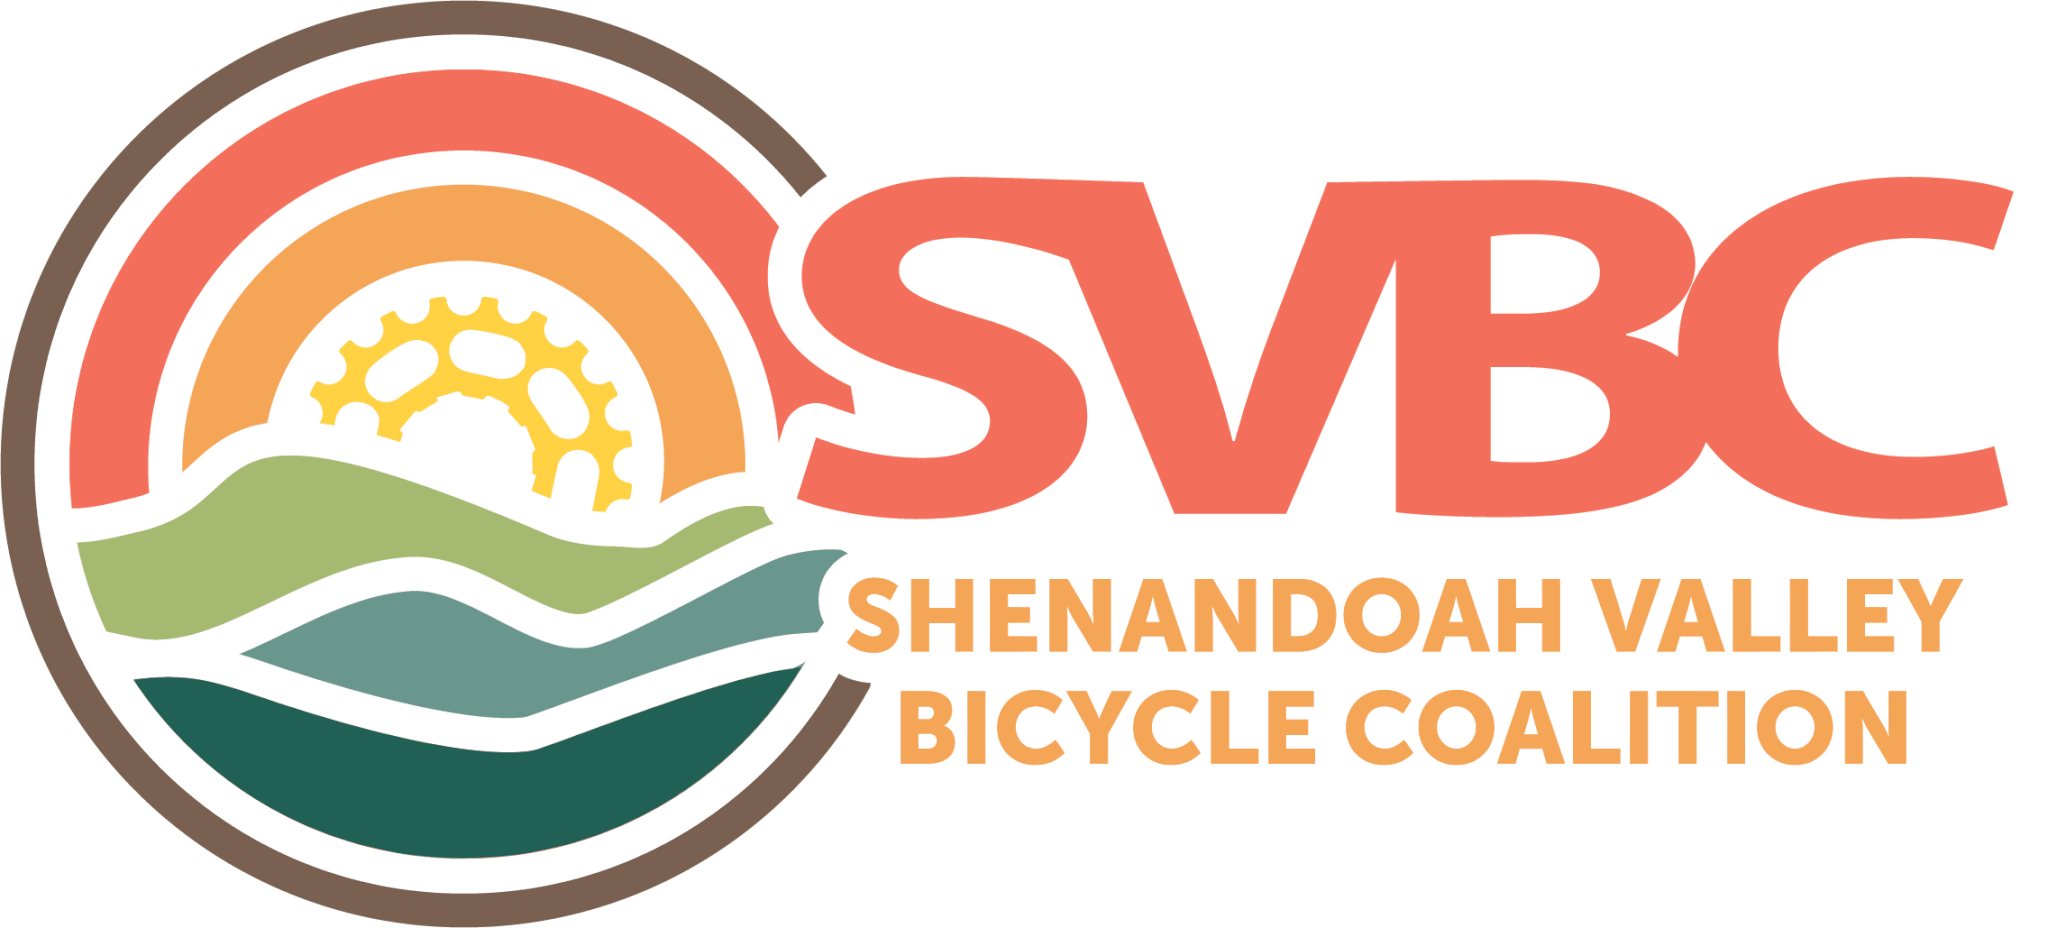 Shenandoah Valley Bicycle Coalition SVBC